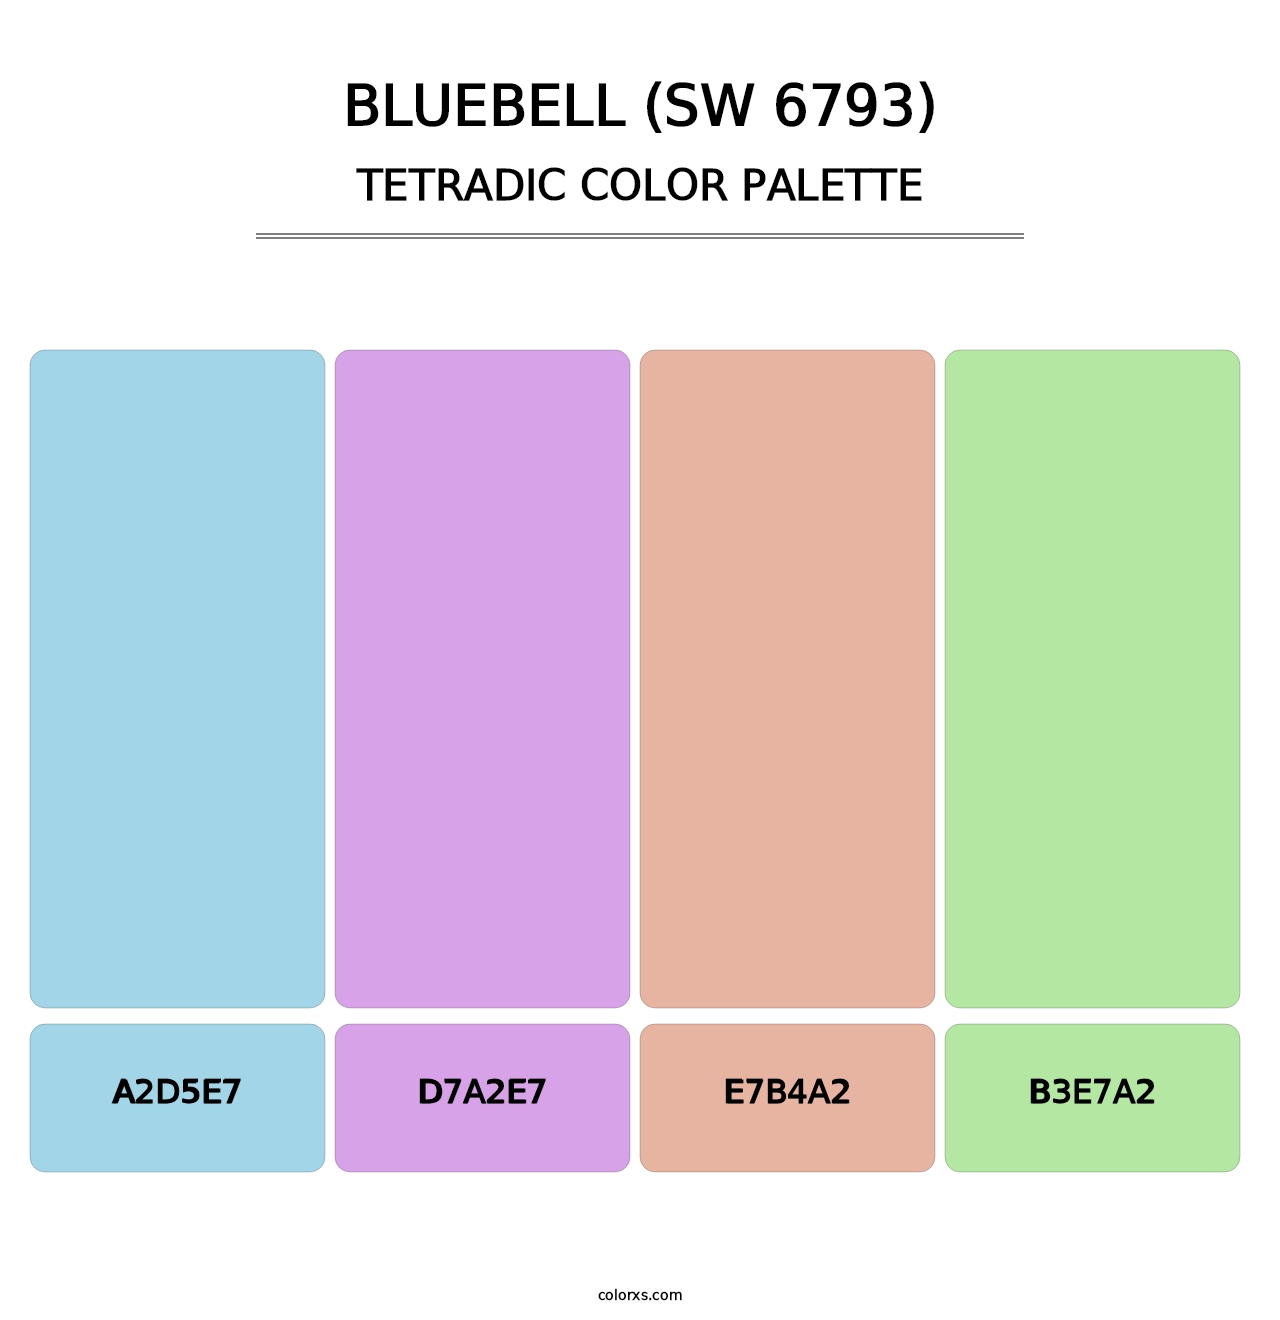 Bluebell (SW 6793) - Tetradic Color Palette